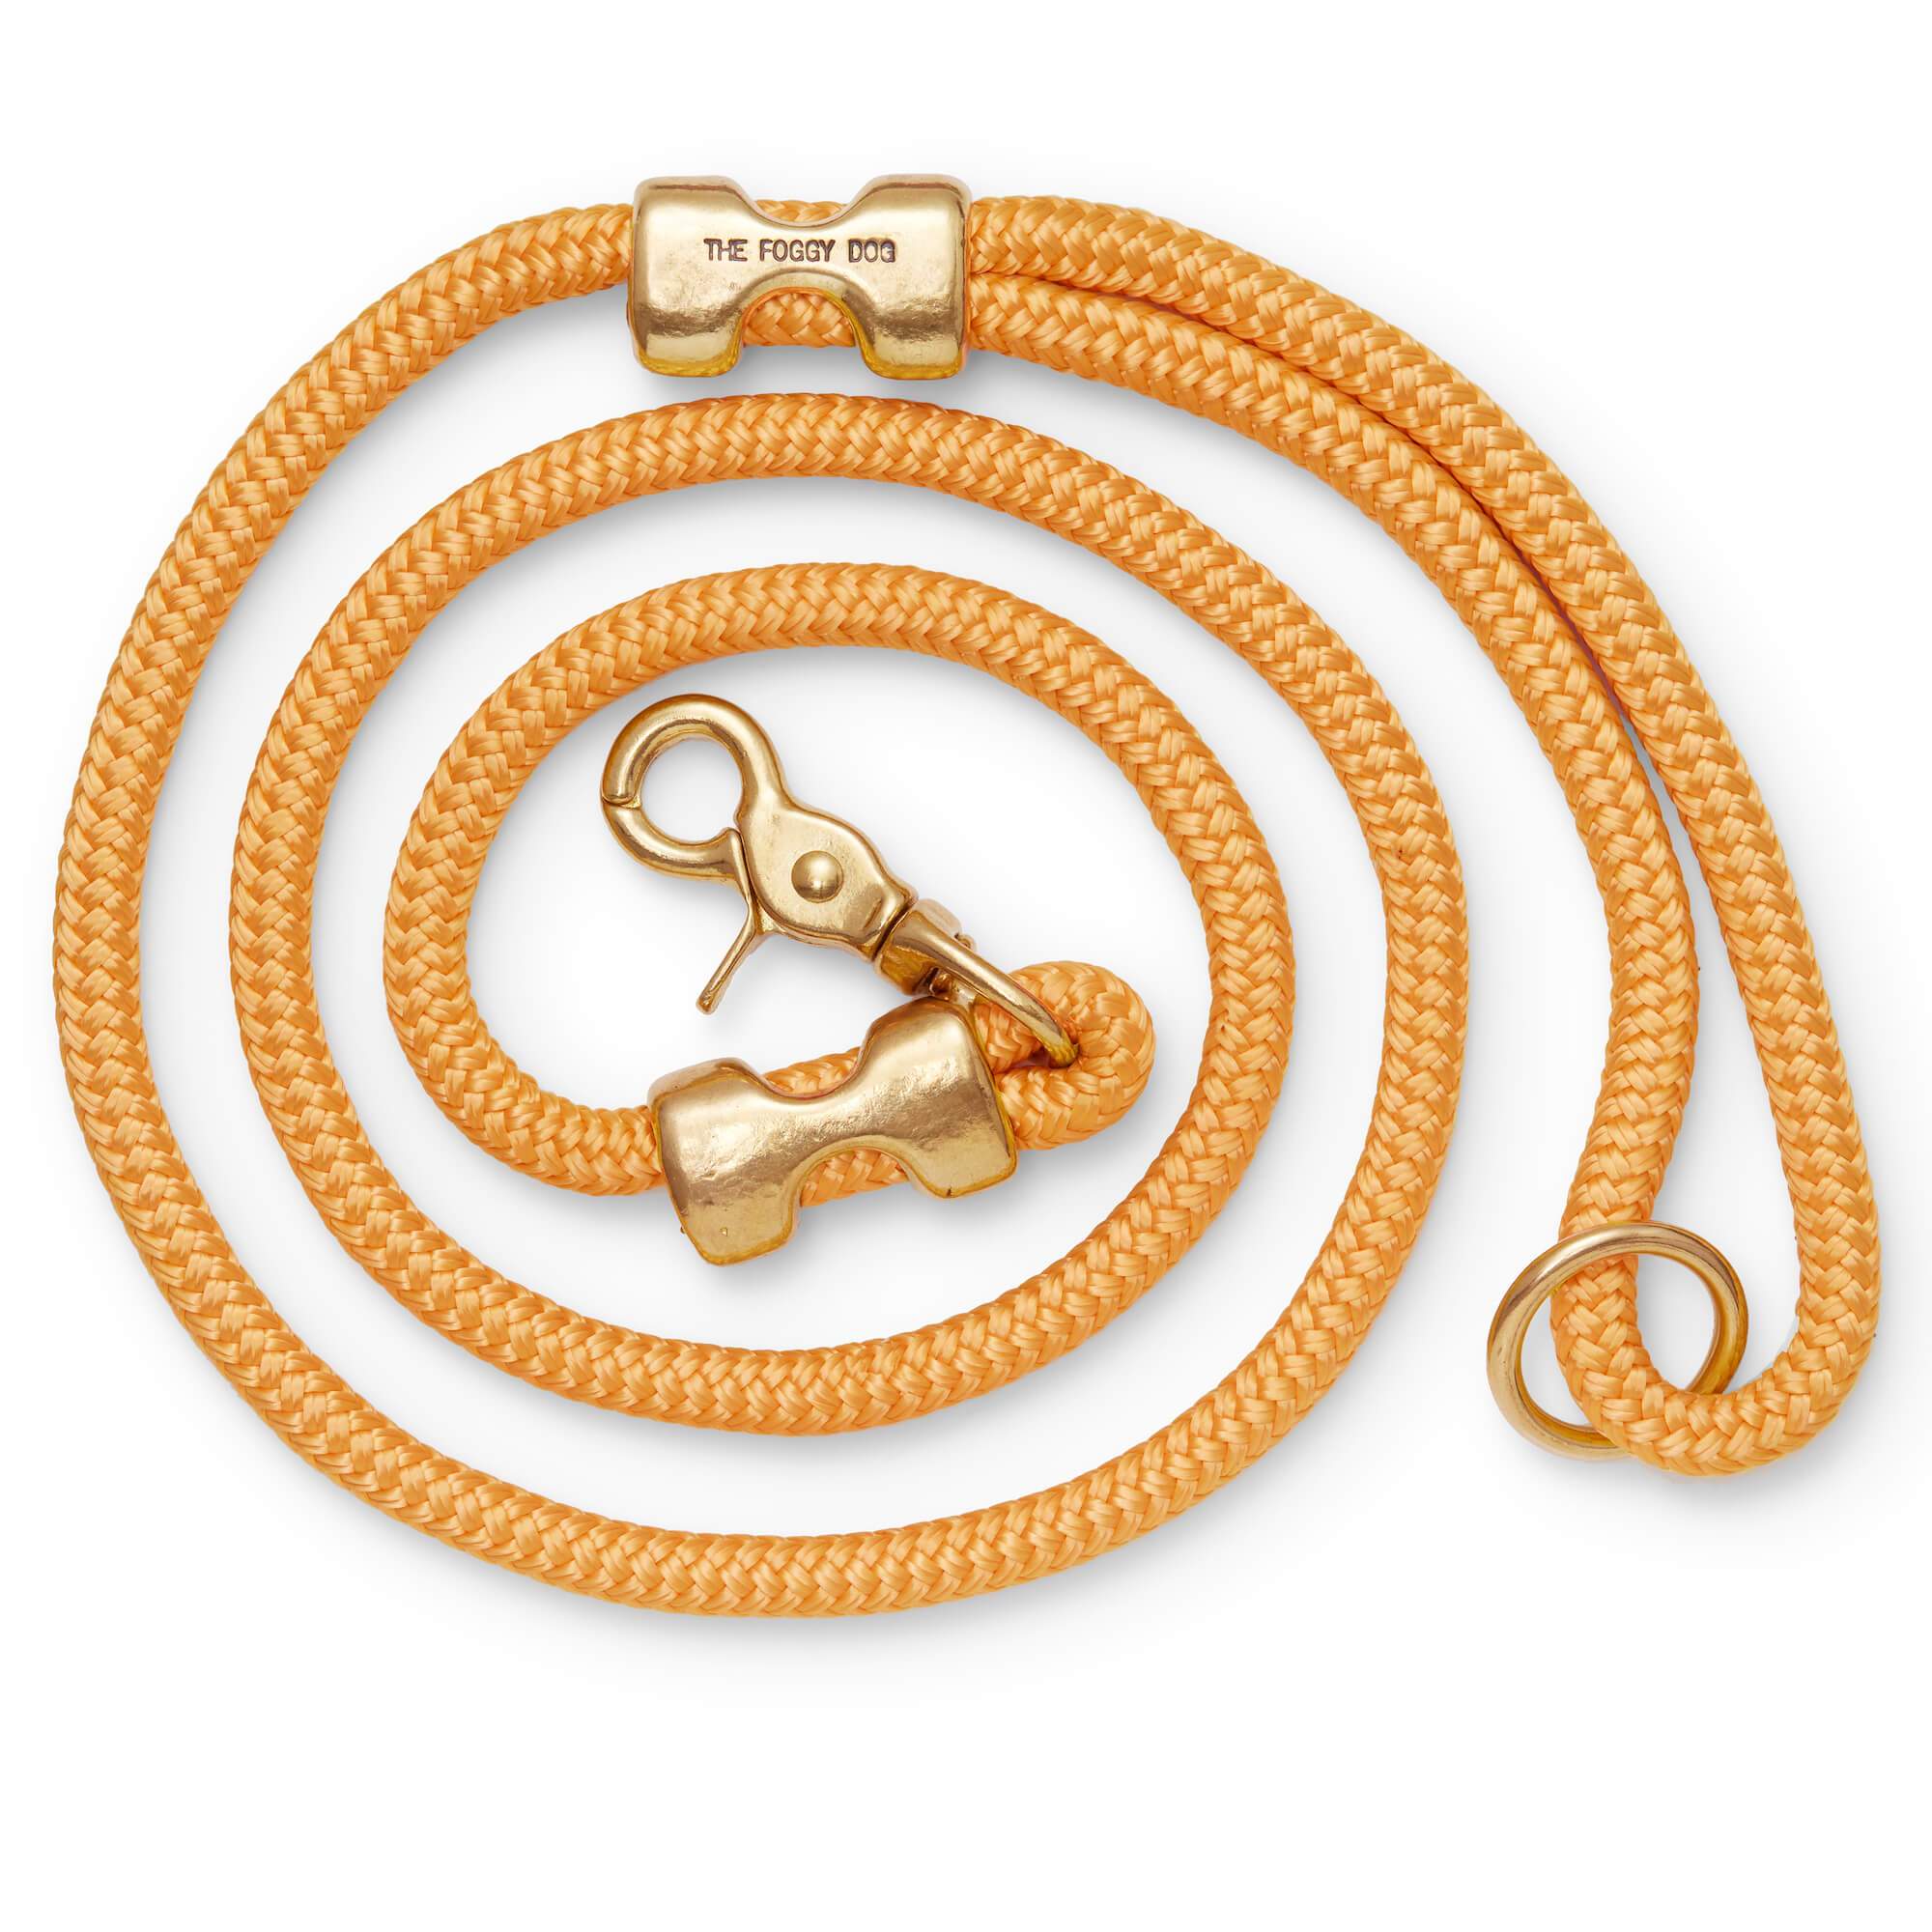 Goldenrod Marine Rope Dog Leash